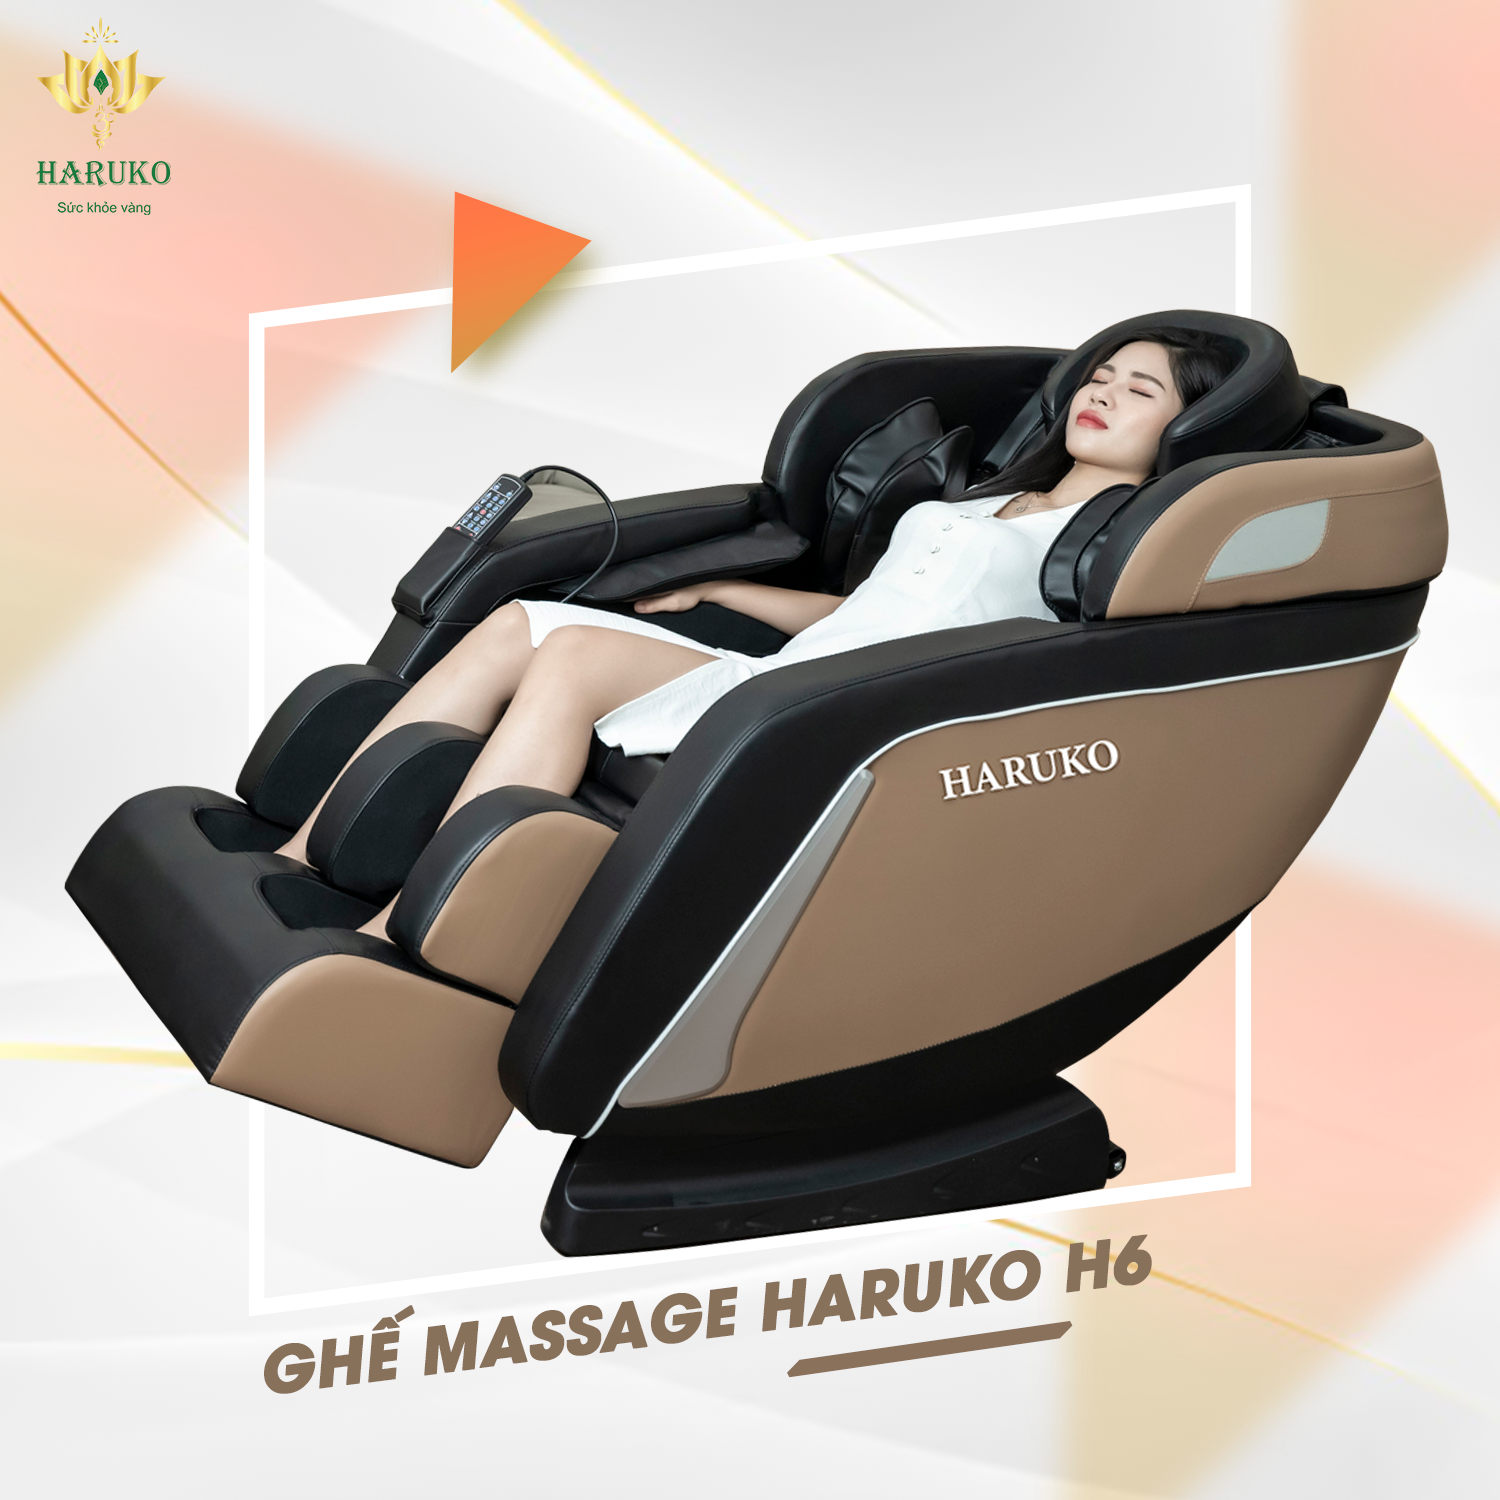 Haruko-H6 là sản phẩm ghế massage phổ biến với nhiều gia đình nhờ mức giá ưu đãi và những tính năng hiện đại,dễ sử dụng